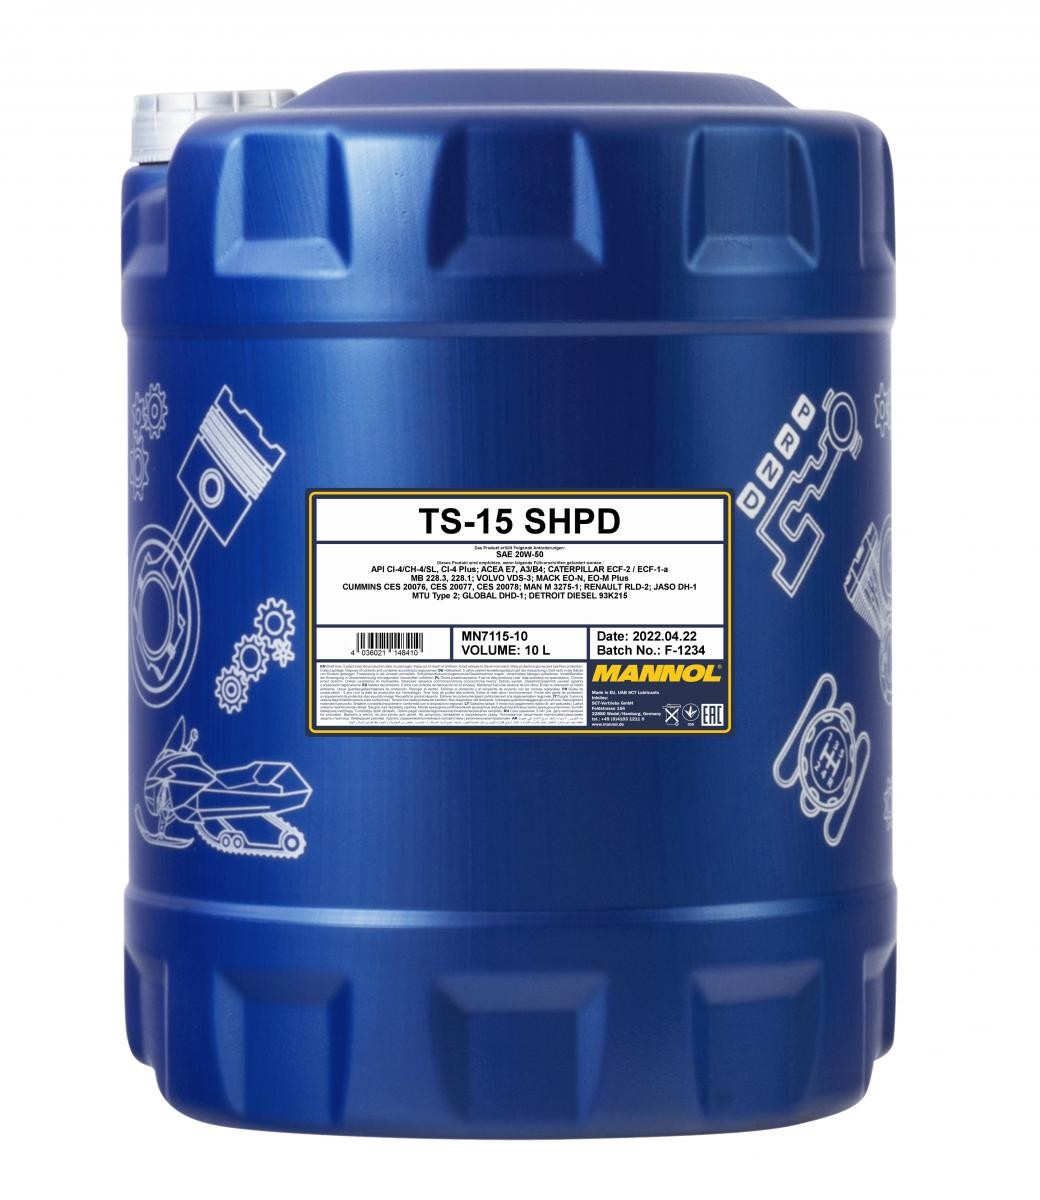 Auto oil ACEA A3/B4 MANNOL - MN7115-10 TS-15, SHPD